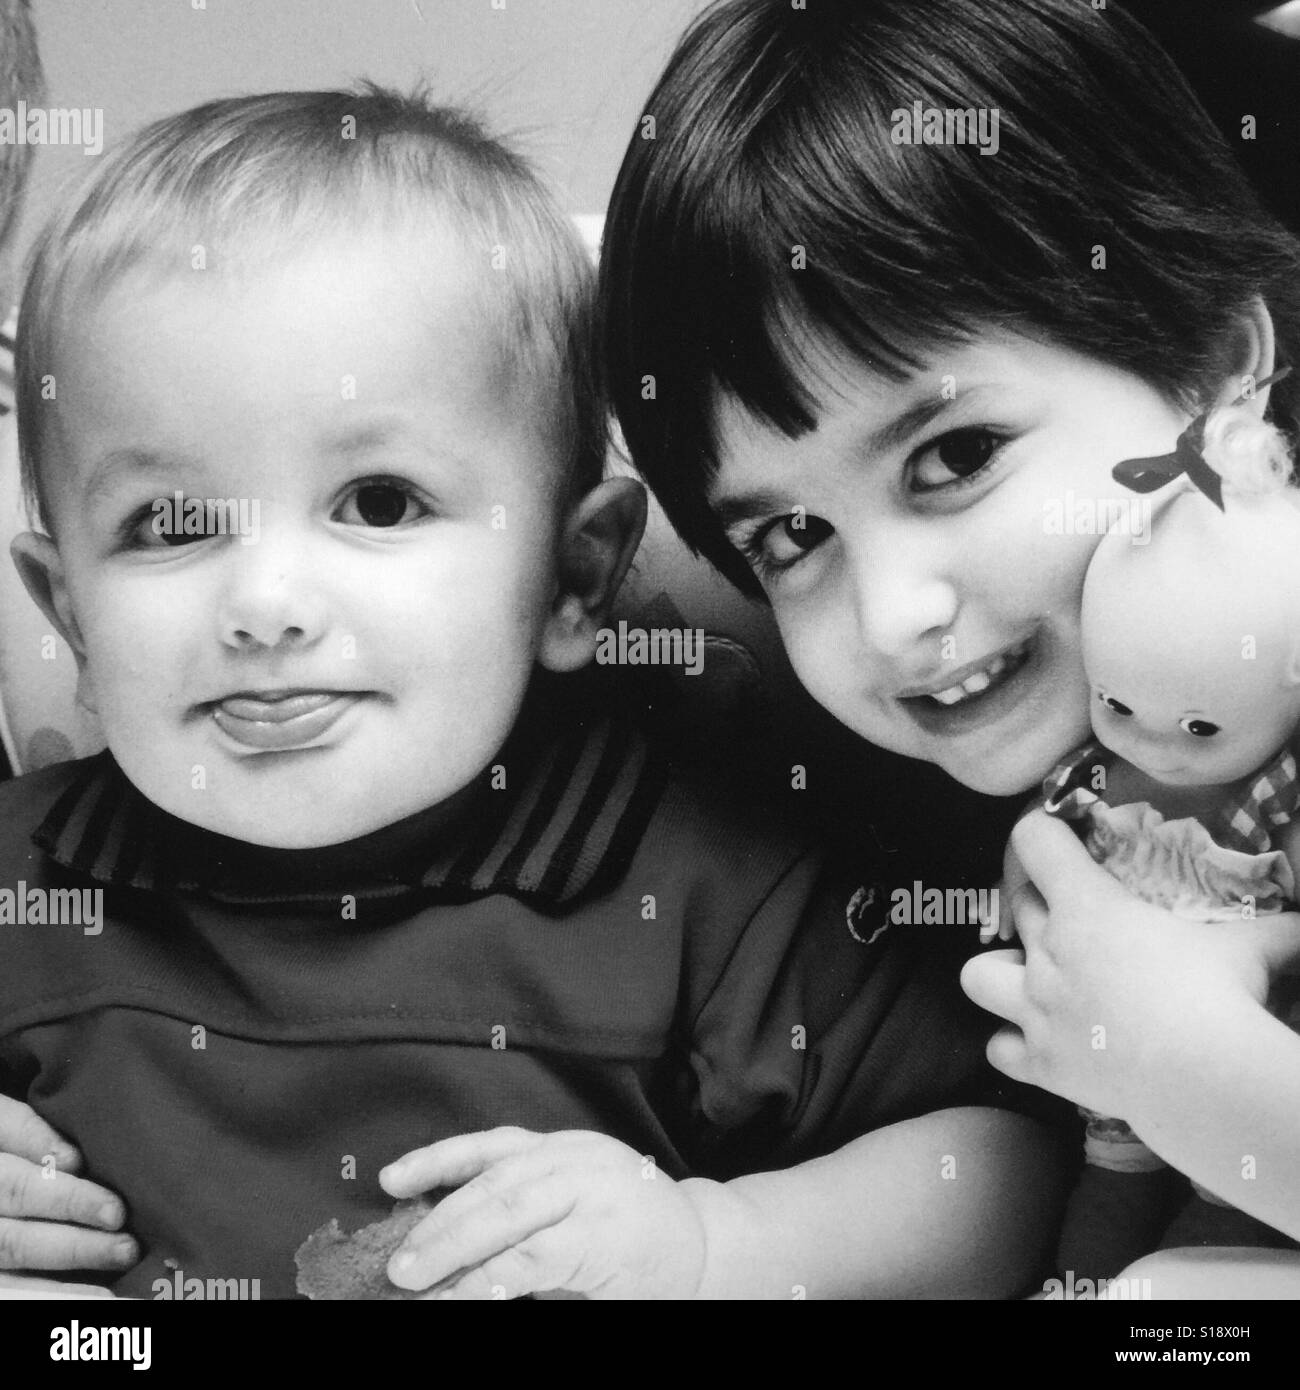 Ein schwarz-weiß Bild von einem Kleinkind Jungen und seine Schwester, die eine Babypuppe hält Stockfoto